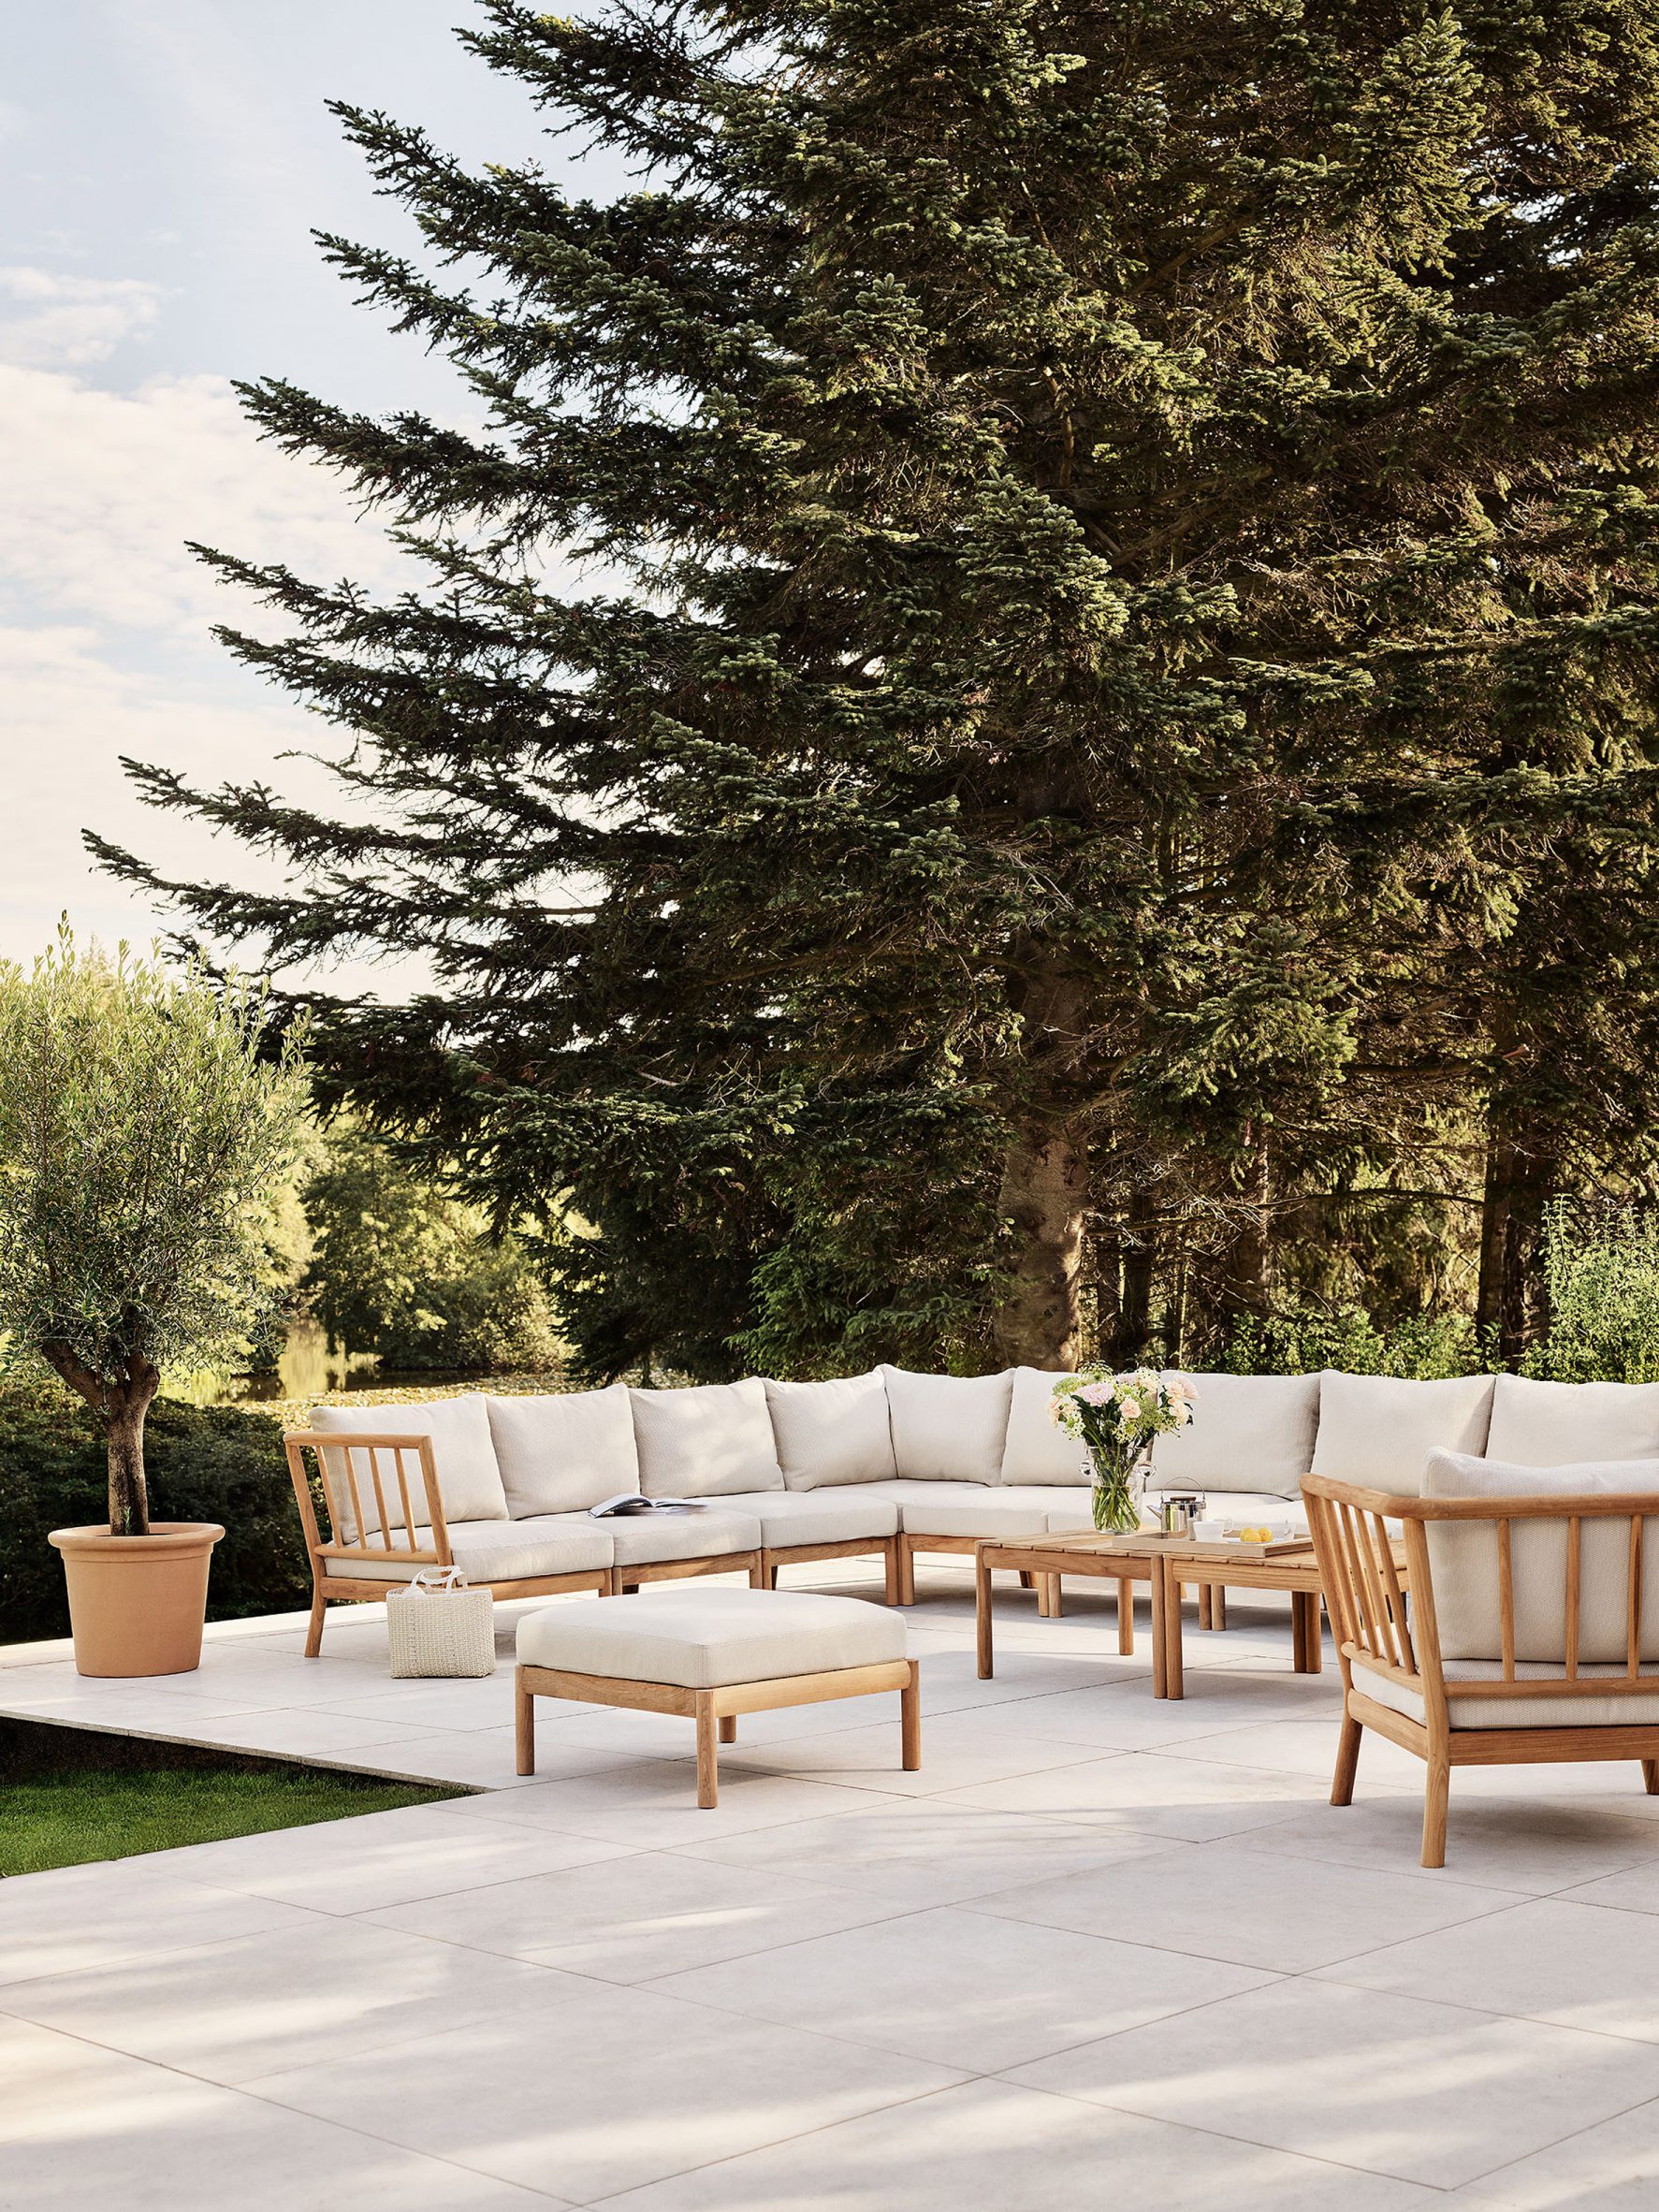 Garden with Tradition outdoor furniture by Povl B Eskildsen for Fritz Hansen